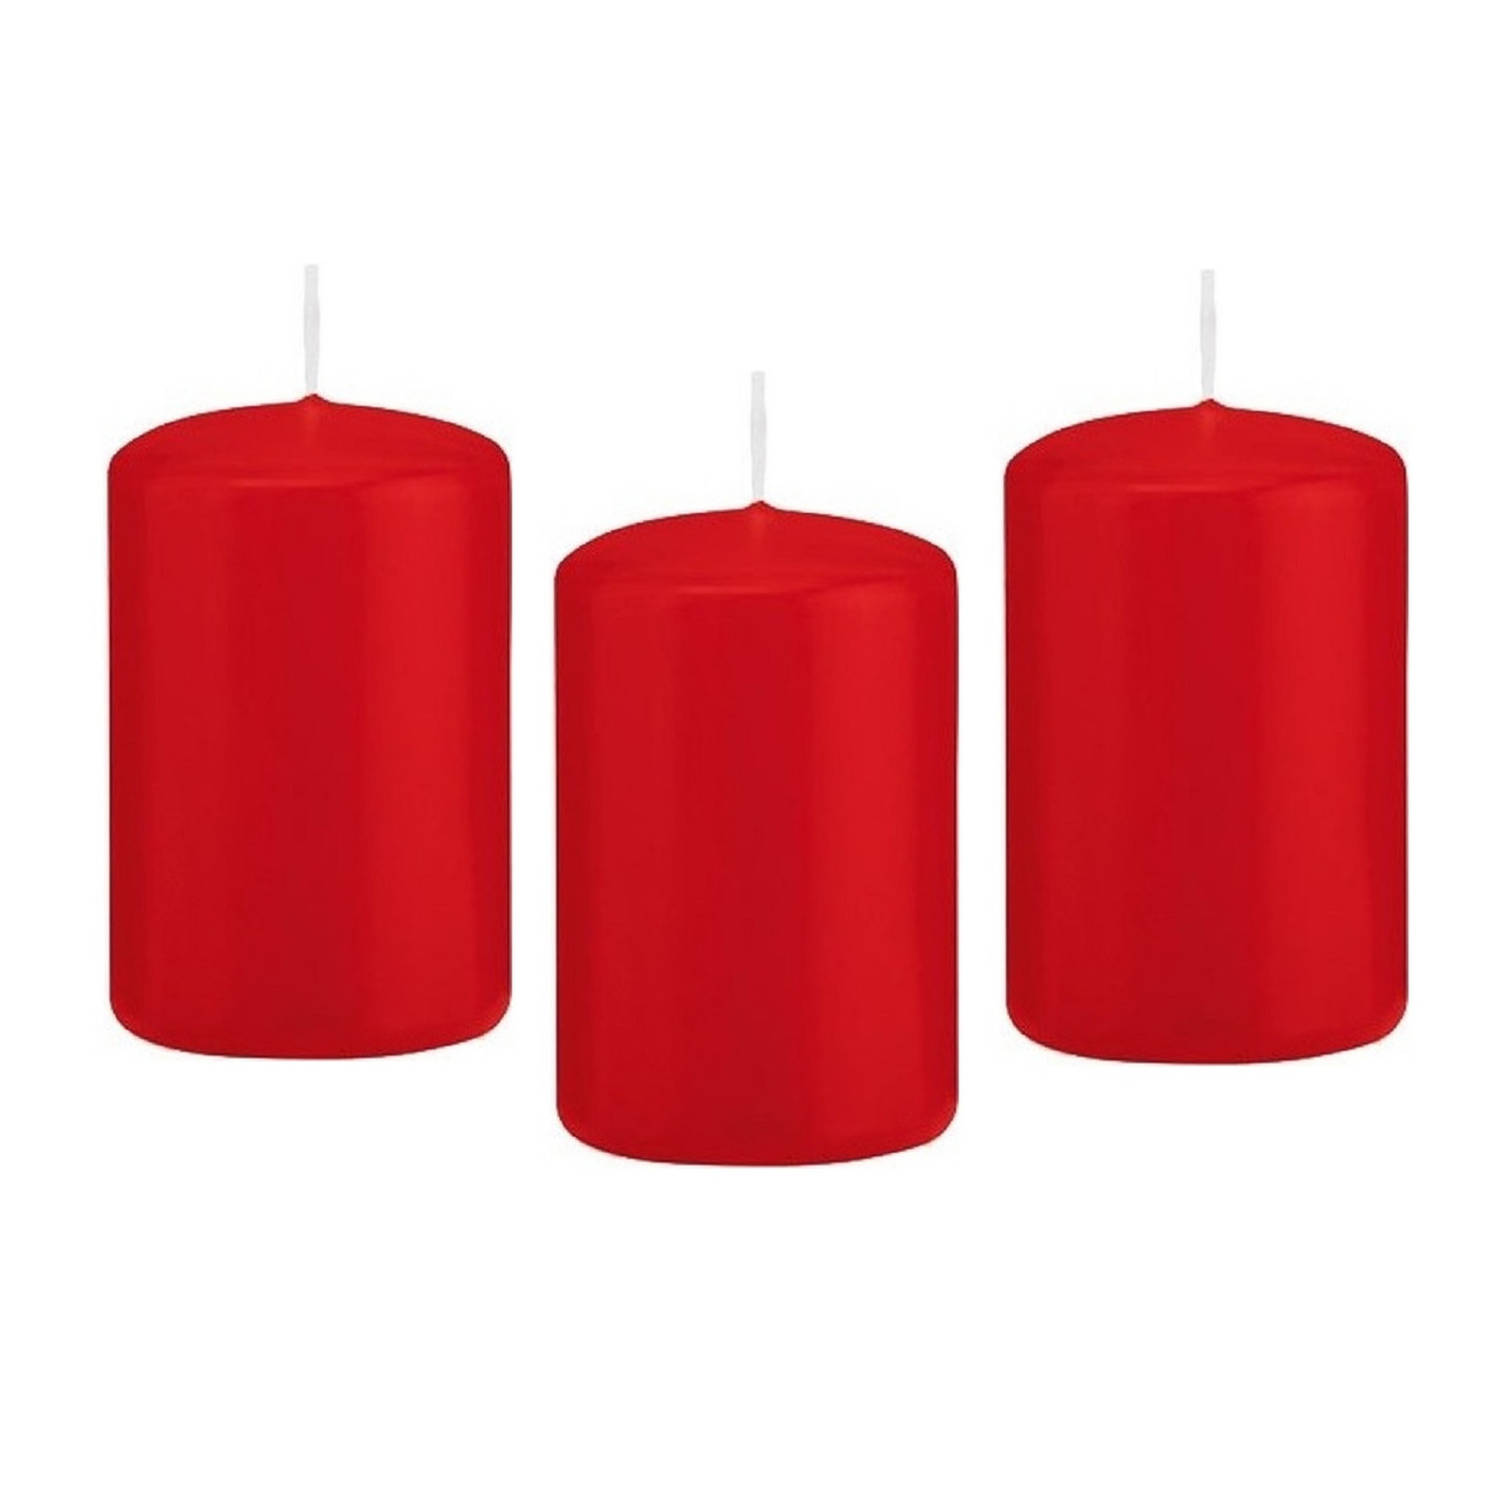 Trend Candles 8x Stuks Rode Cilinderkaars/stompkaars 5 X 8 Cm 18 Branduren - Geurloze Kaarsen - Woondecoraties - Rood